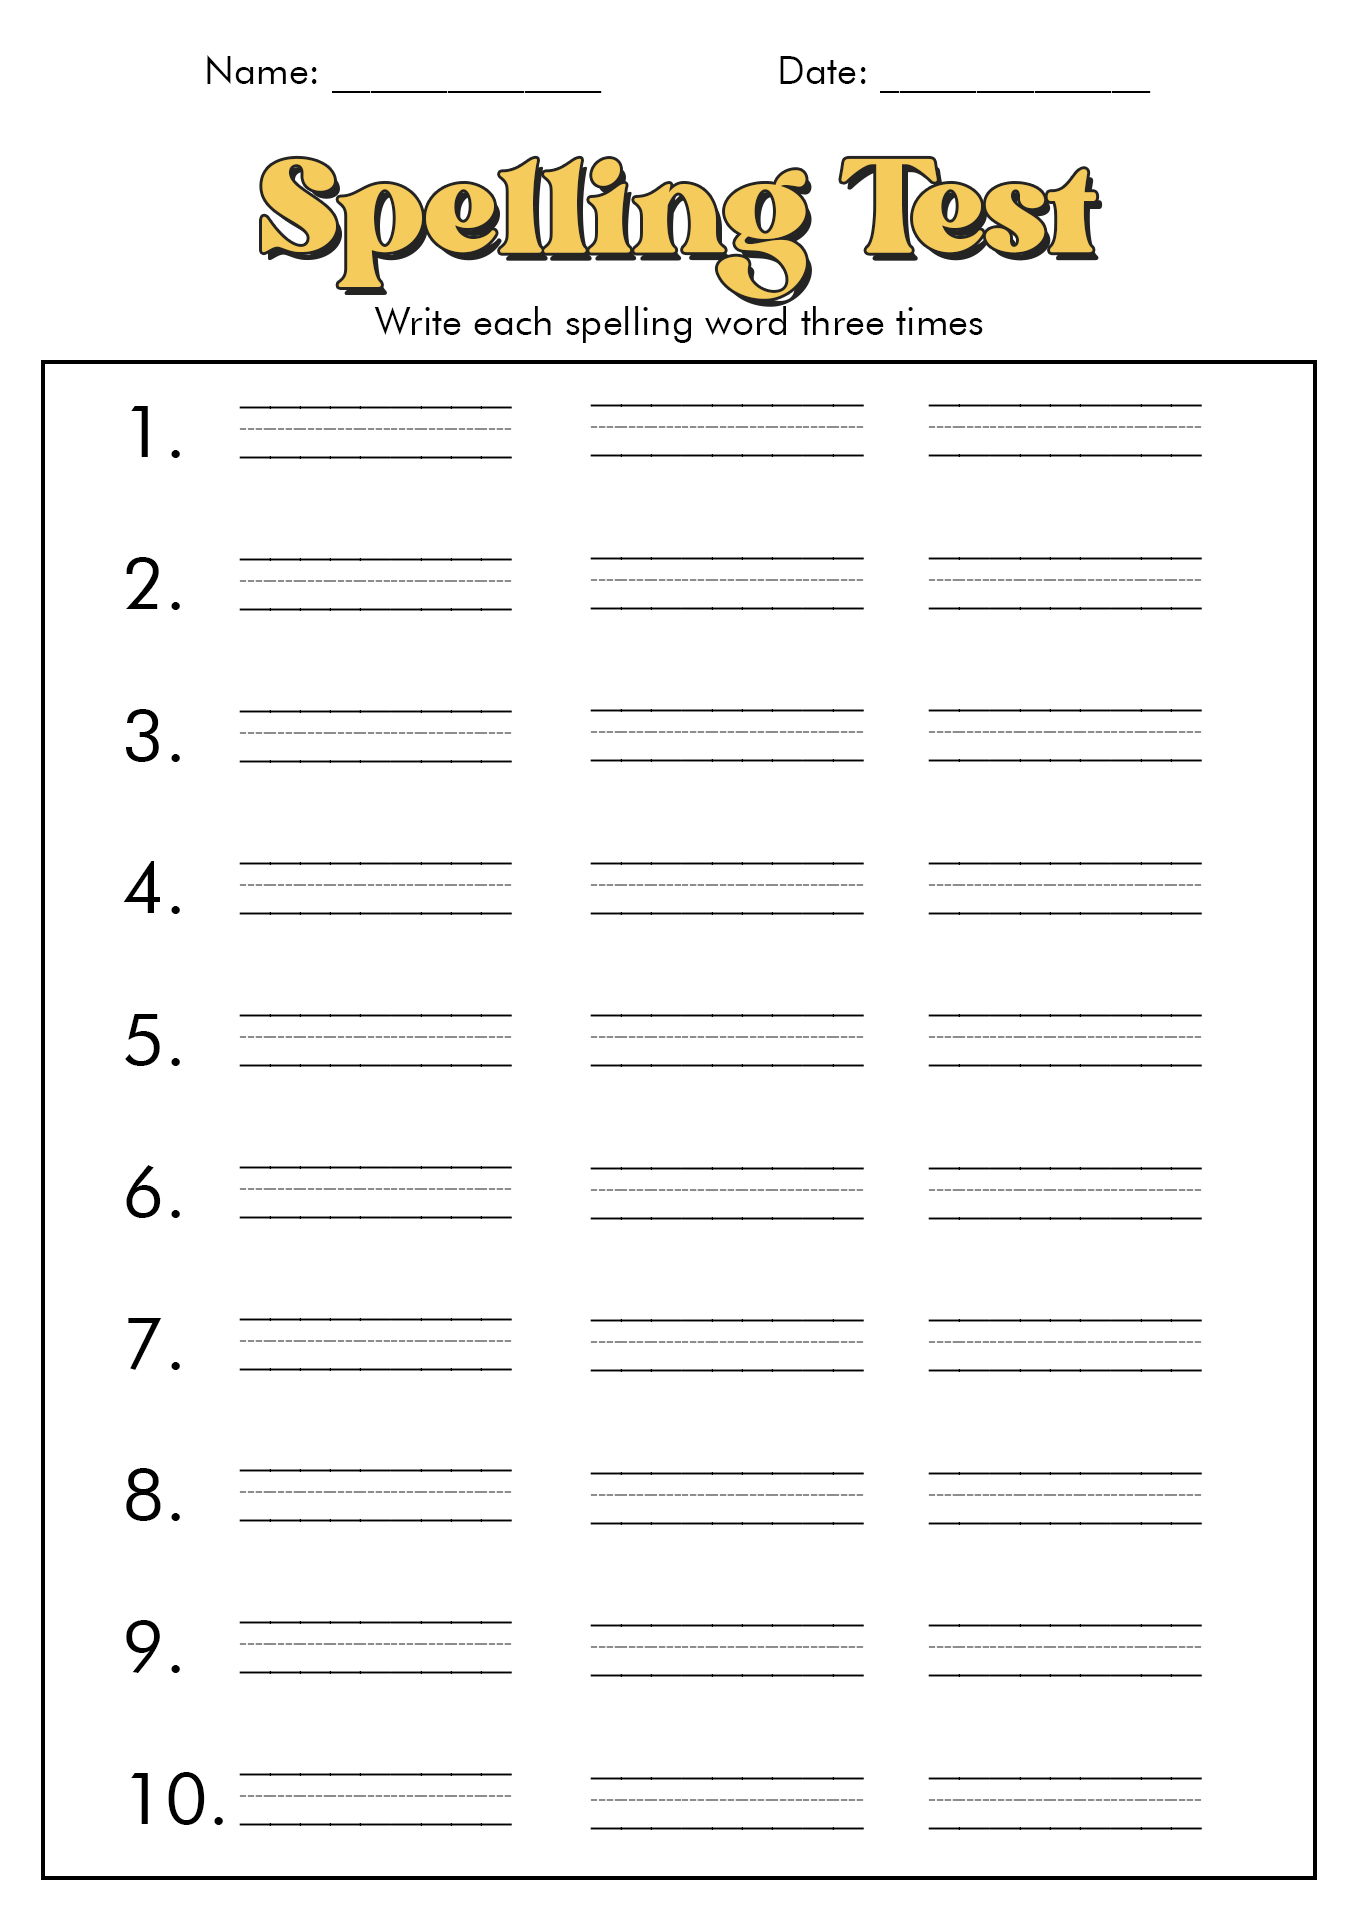 Printable Blank Spelling Test Worksheets Image